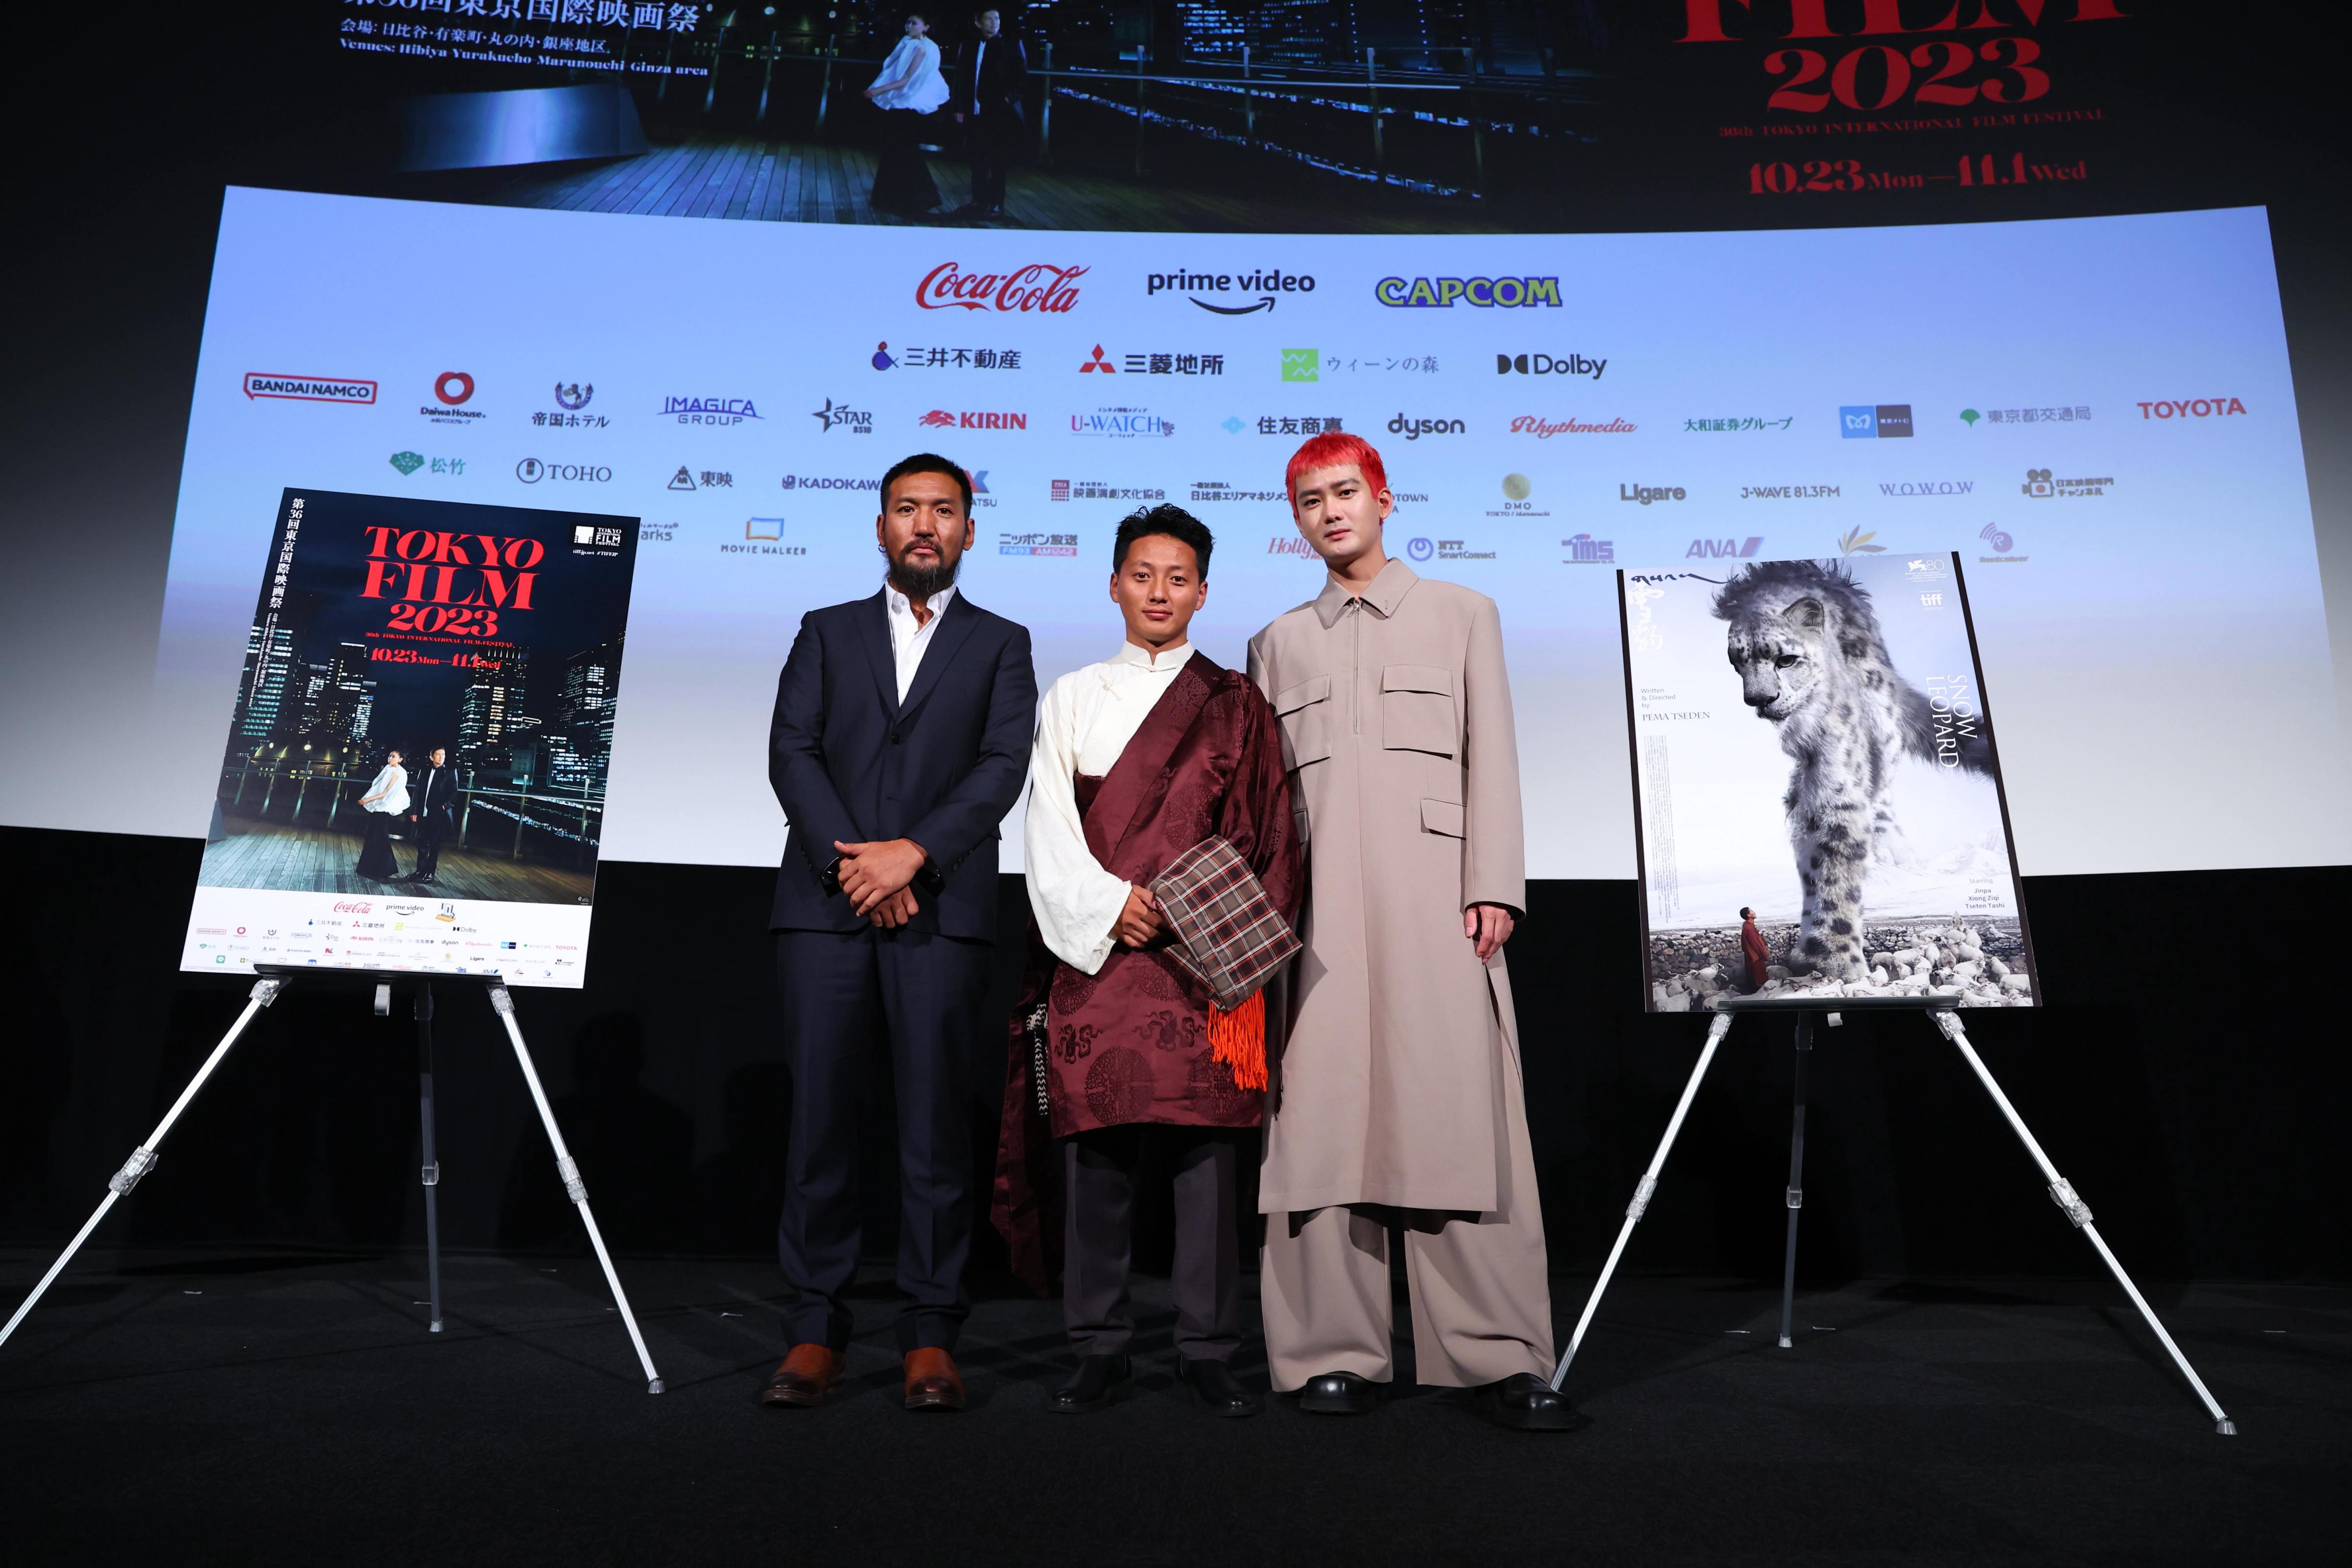 【影視動漫】萬瑪才旦遺作《雪豹》獲東京國際電影節大獎 獨特人文氣質獲盛讚-第0張